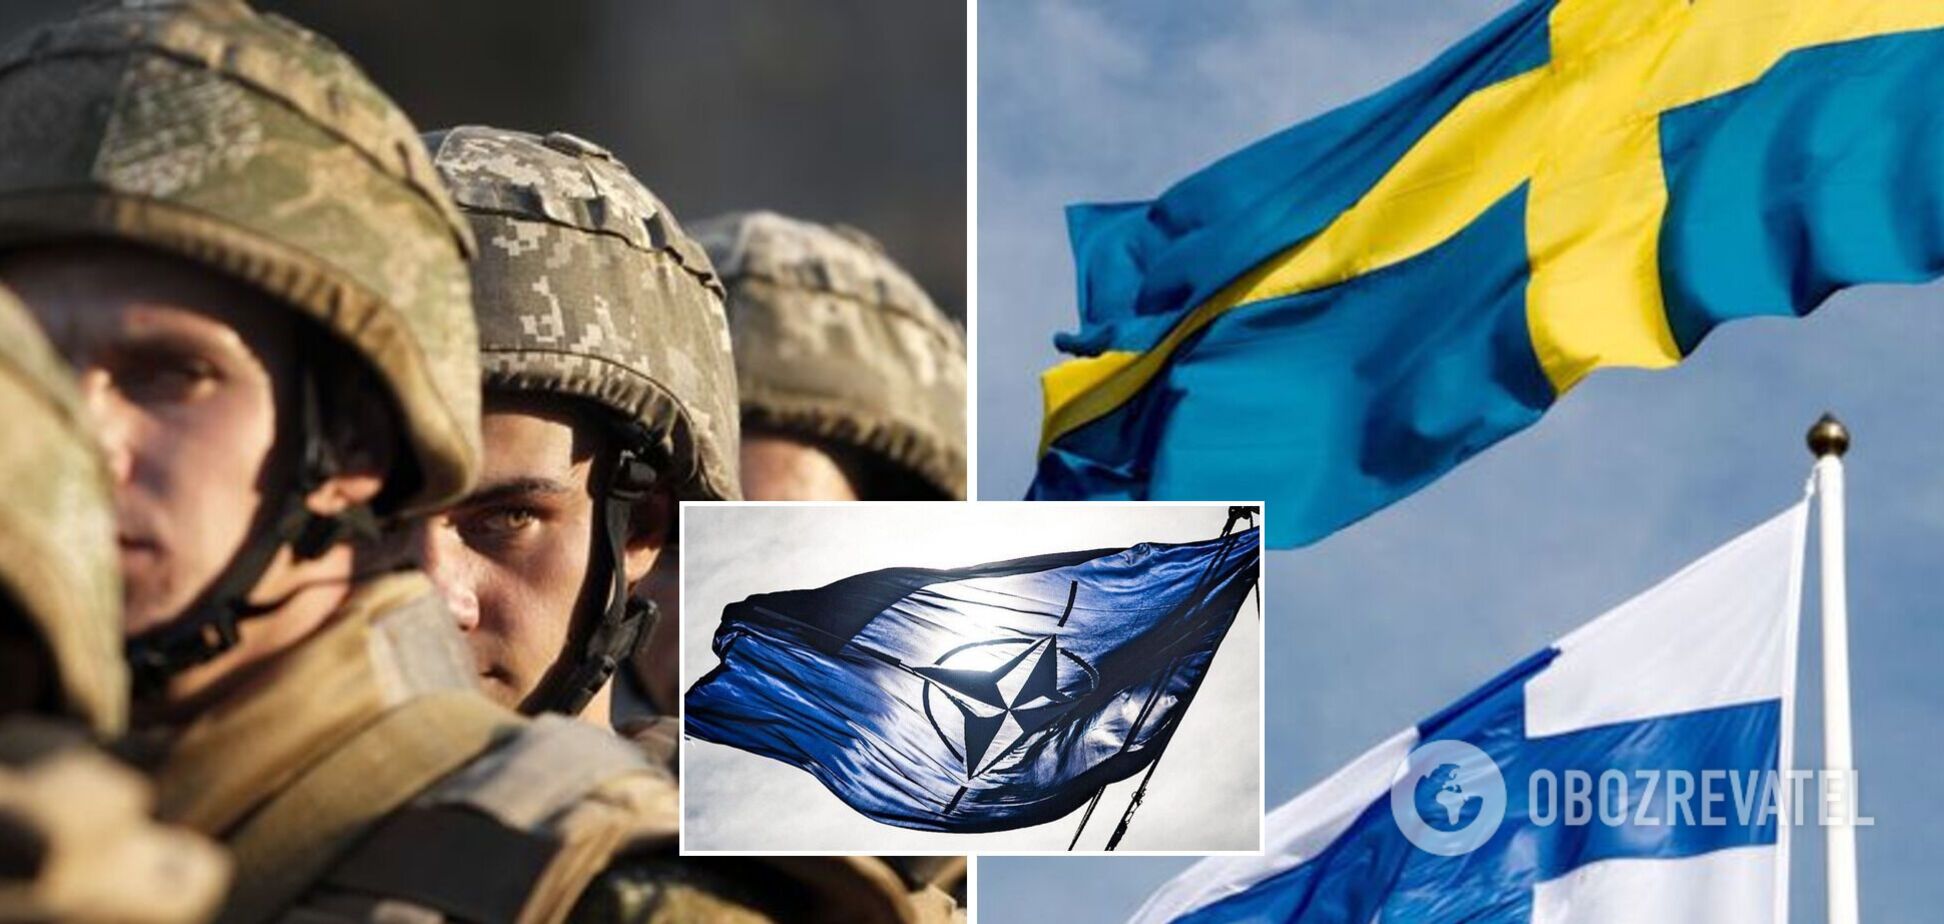 Швеция подаст заявку о вступлении в НАТО в июне – СМИ